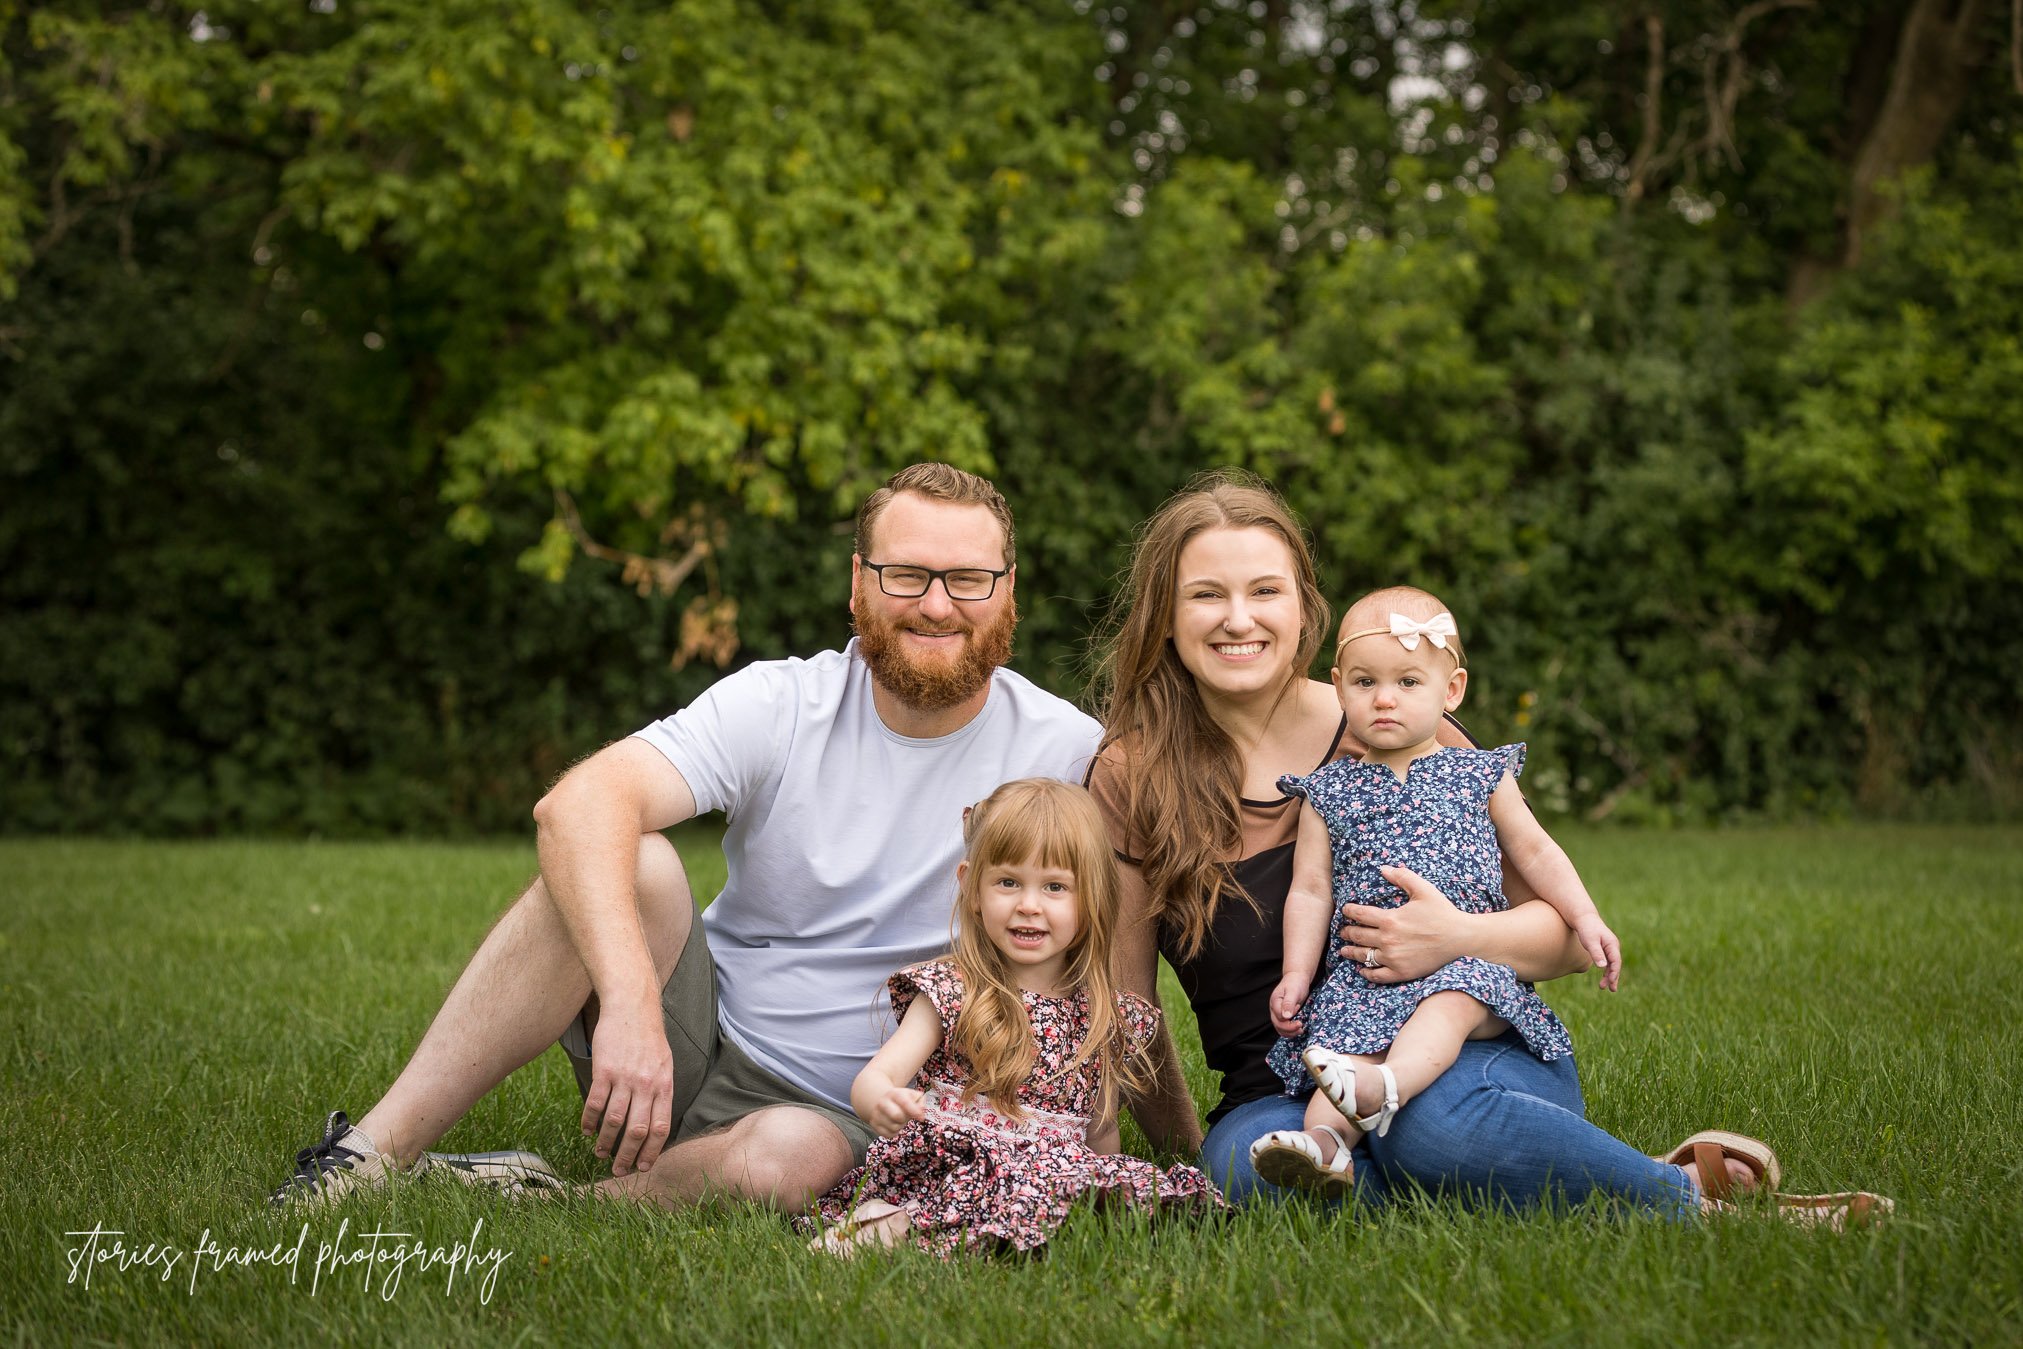 Outdoor family photoshoot in Glastonbury CT | One Big Happy Photo